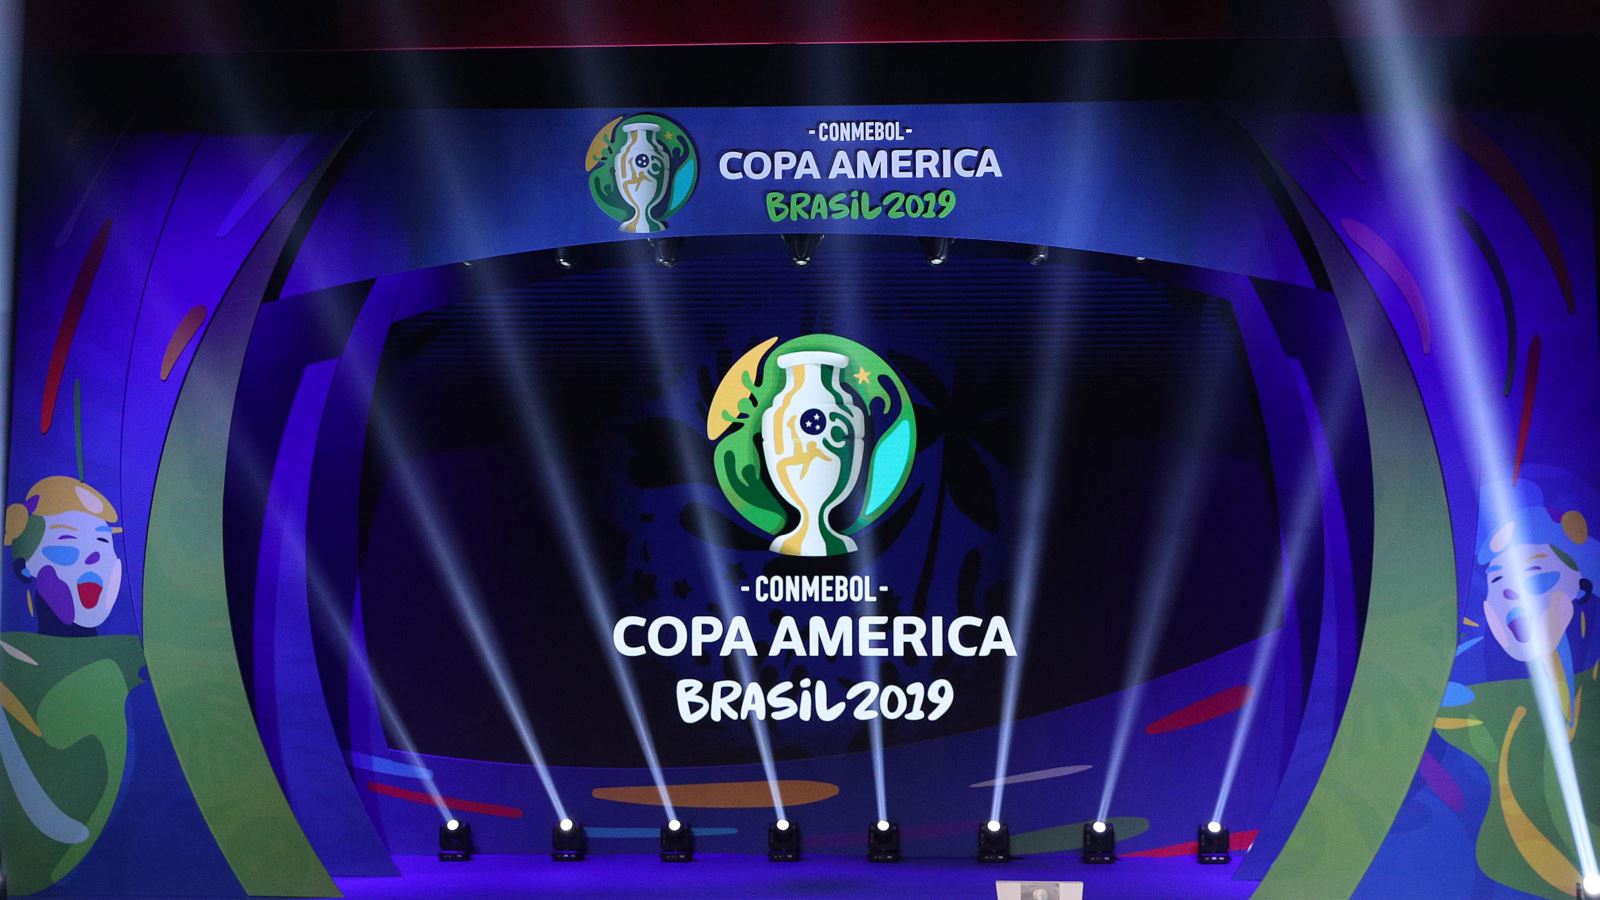  Lịch thi đấu và trực tiếp bóng đá Copa America 2019